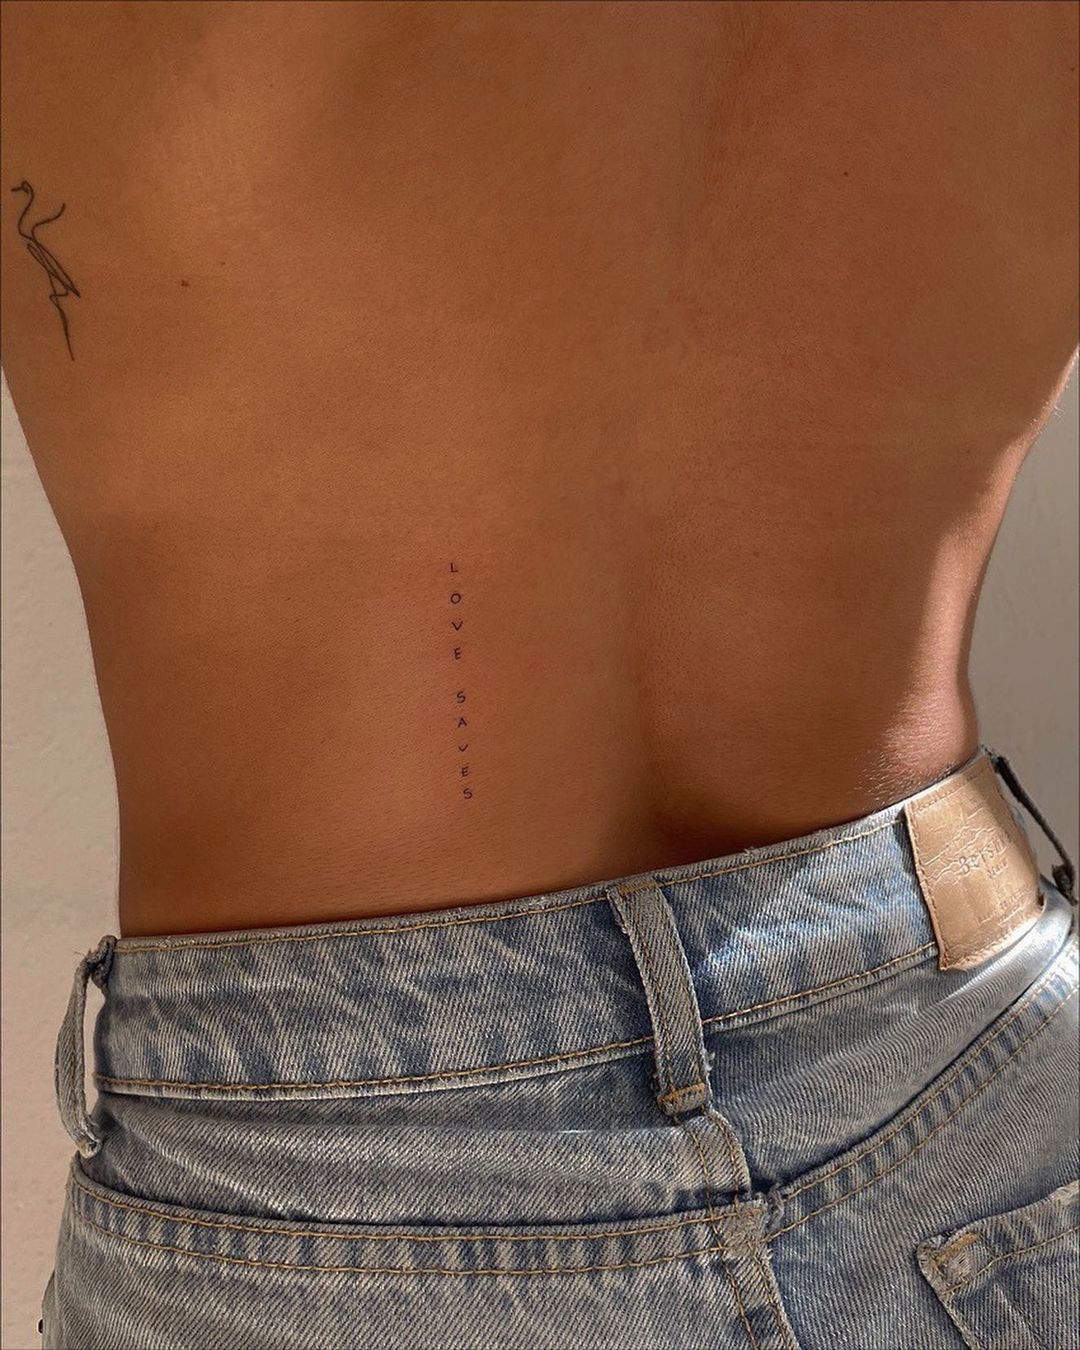 Tatuaje ‘love saves’ en la espalda